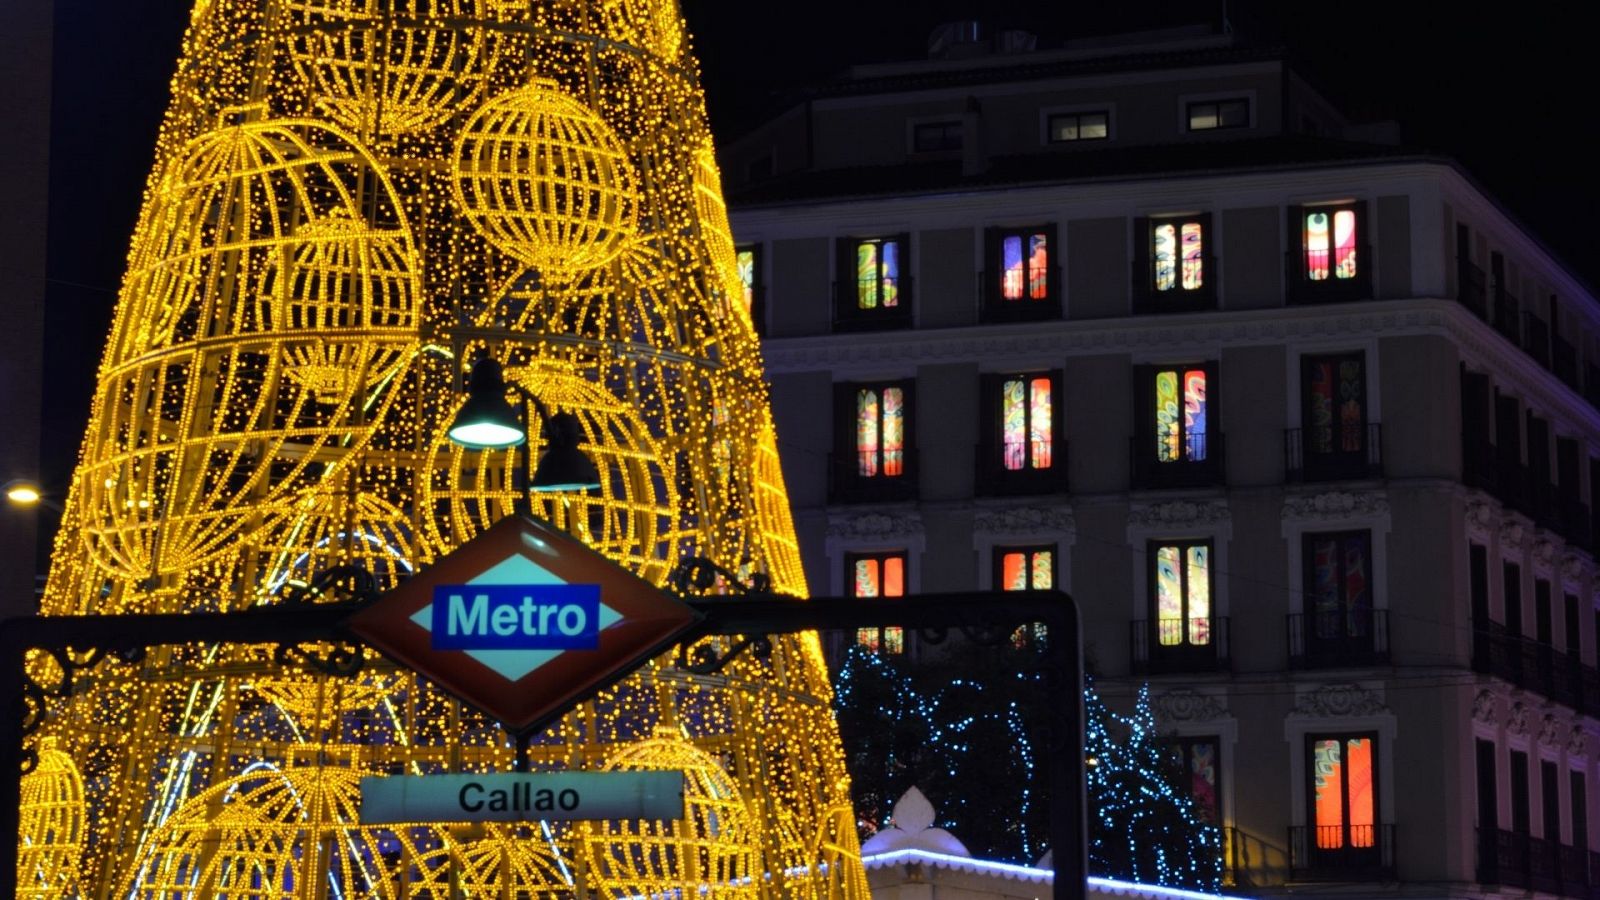 Cosas que hacer en Madrid en Navidad: comer churros con chocolate, comprar lotería y ver las luces - Ver ahora